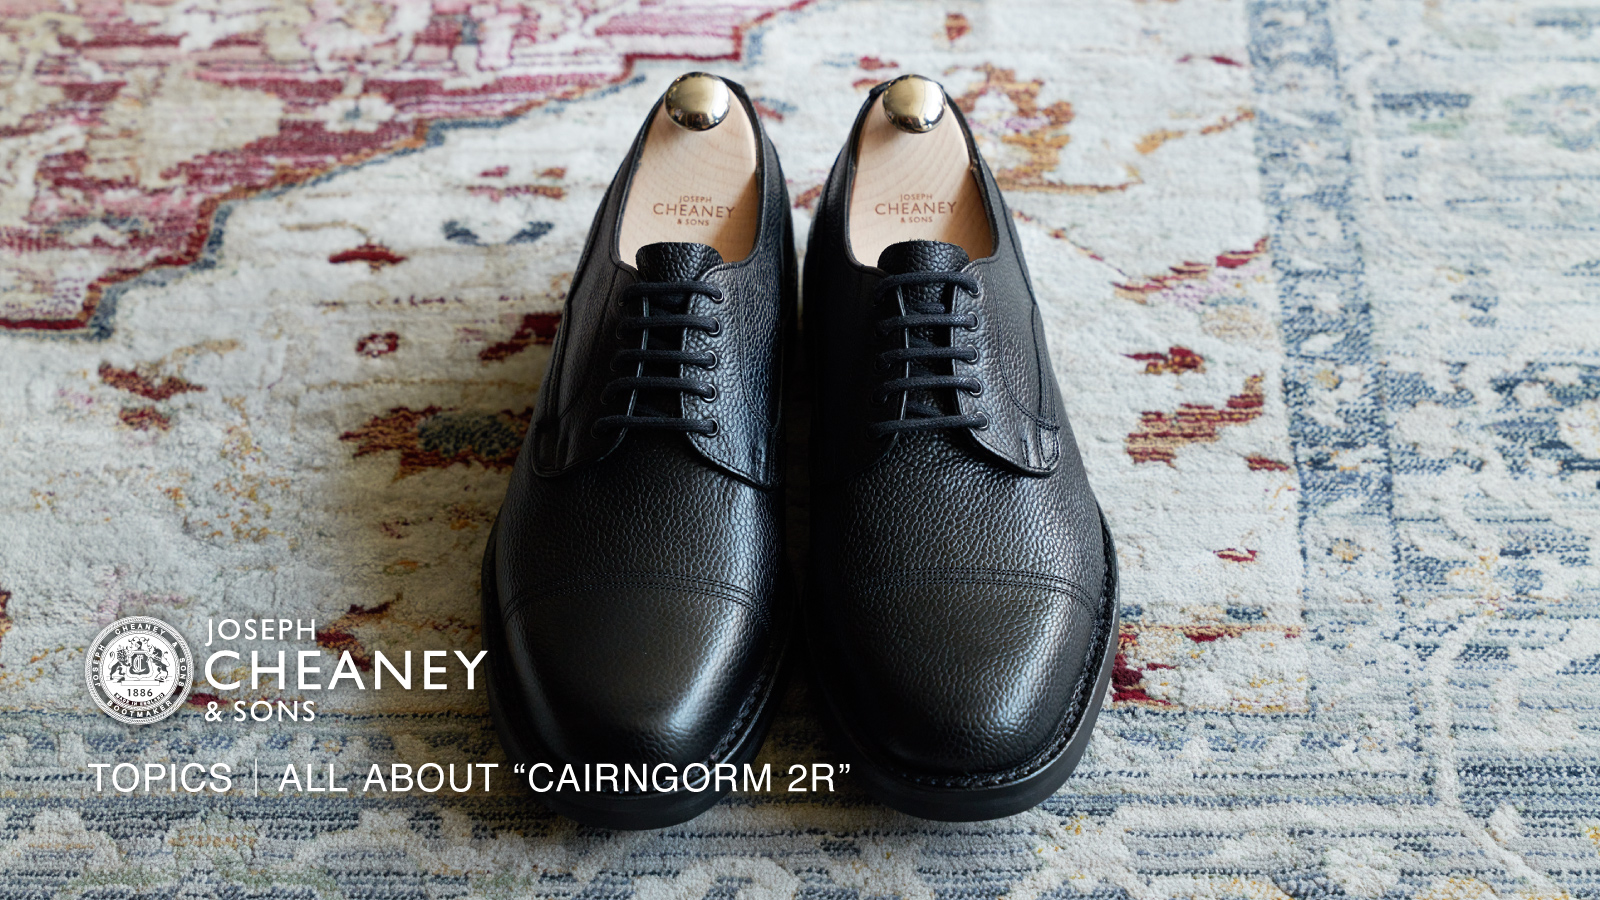 老舗シューメーカー ジョセフ チーニーが手掛ける革靴の名作「ケンゴン Ⅱ R」の魅力とは？